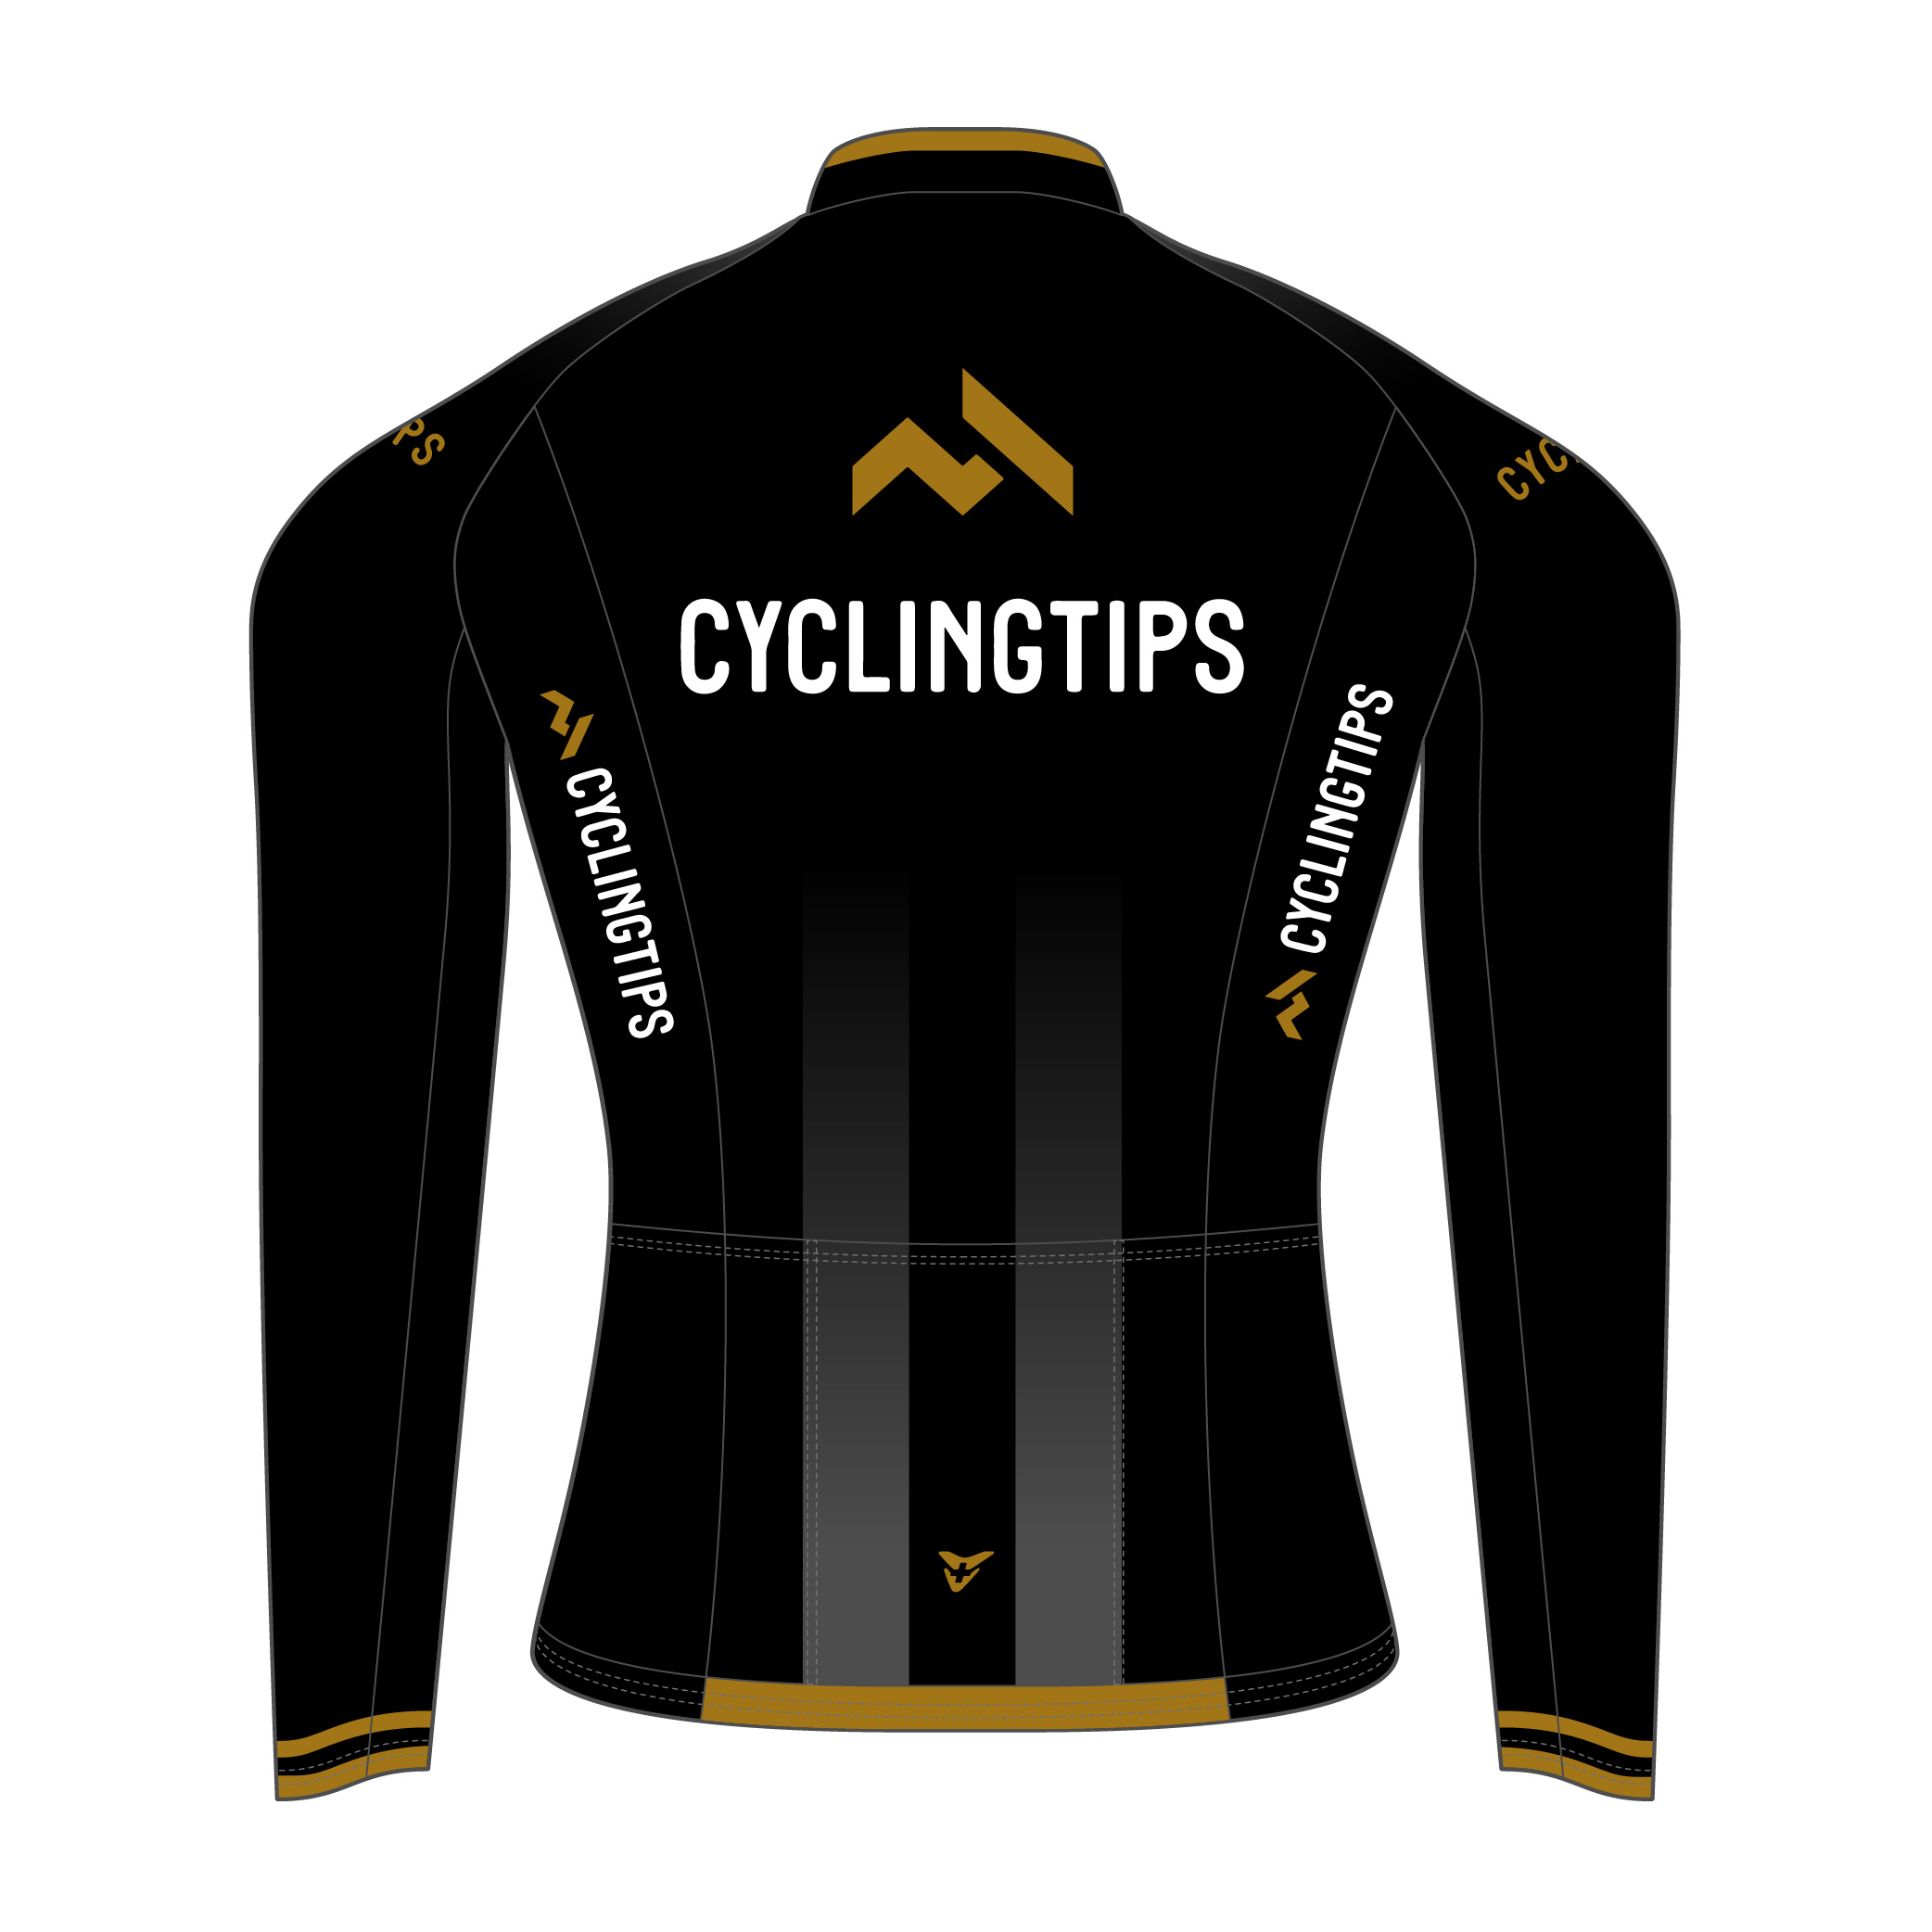 cycling-tips-22-s-52-0009-black-gold-top-back-3.jpg